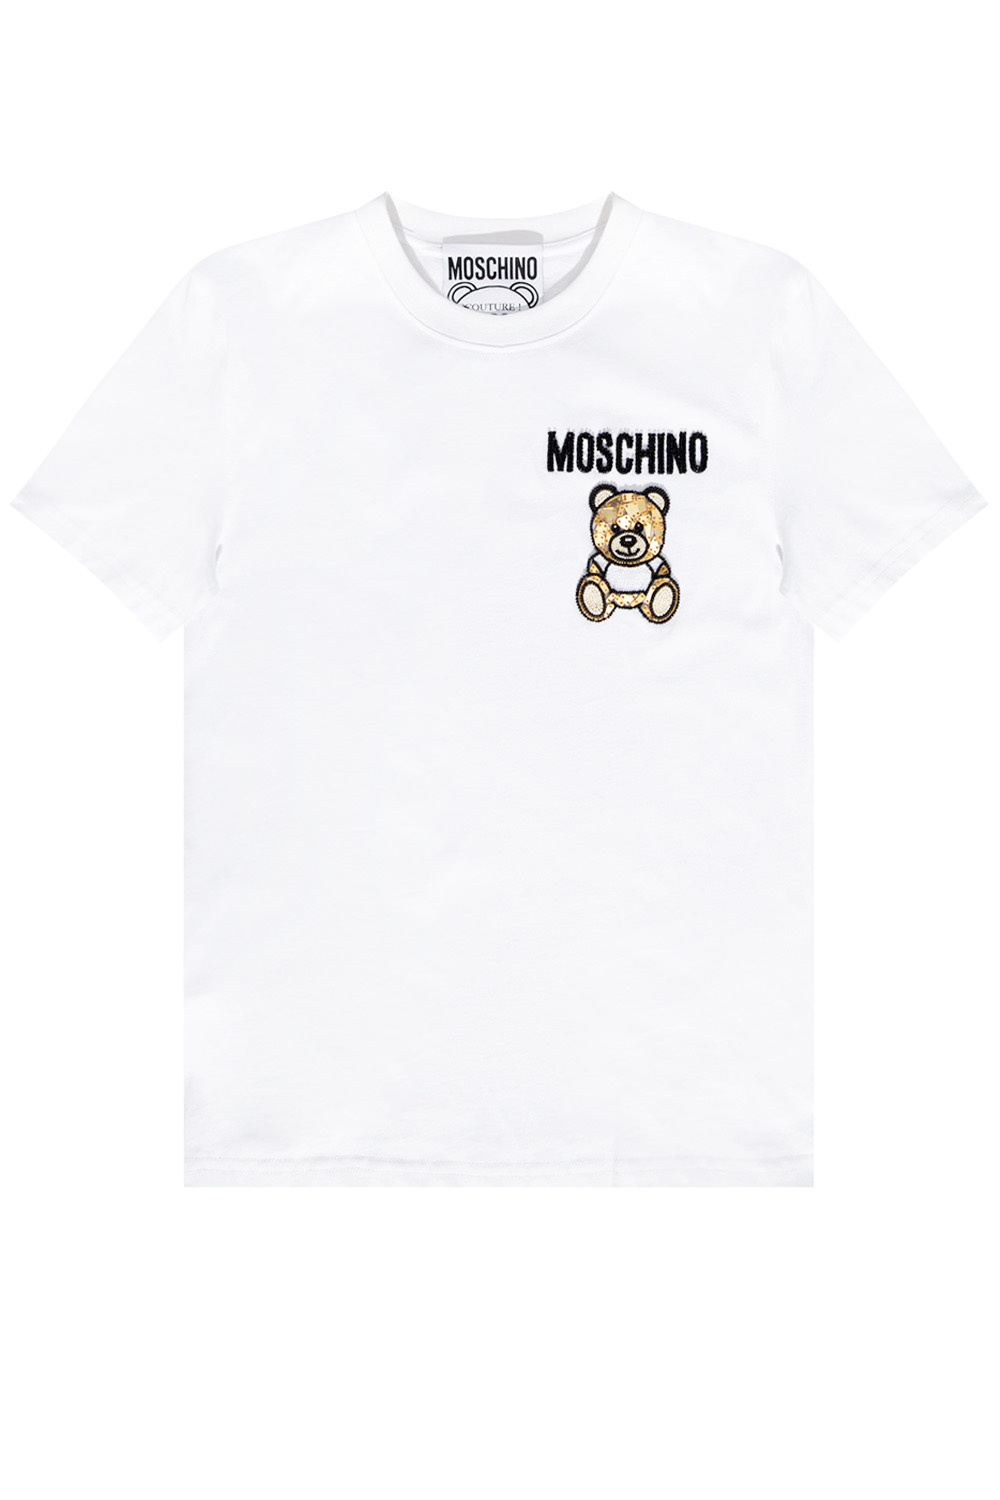 moschino t shirt size guide